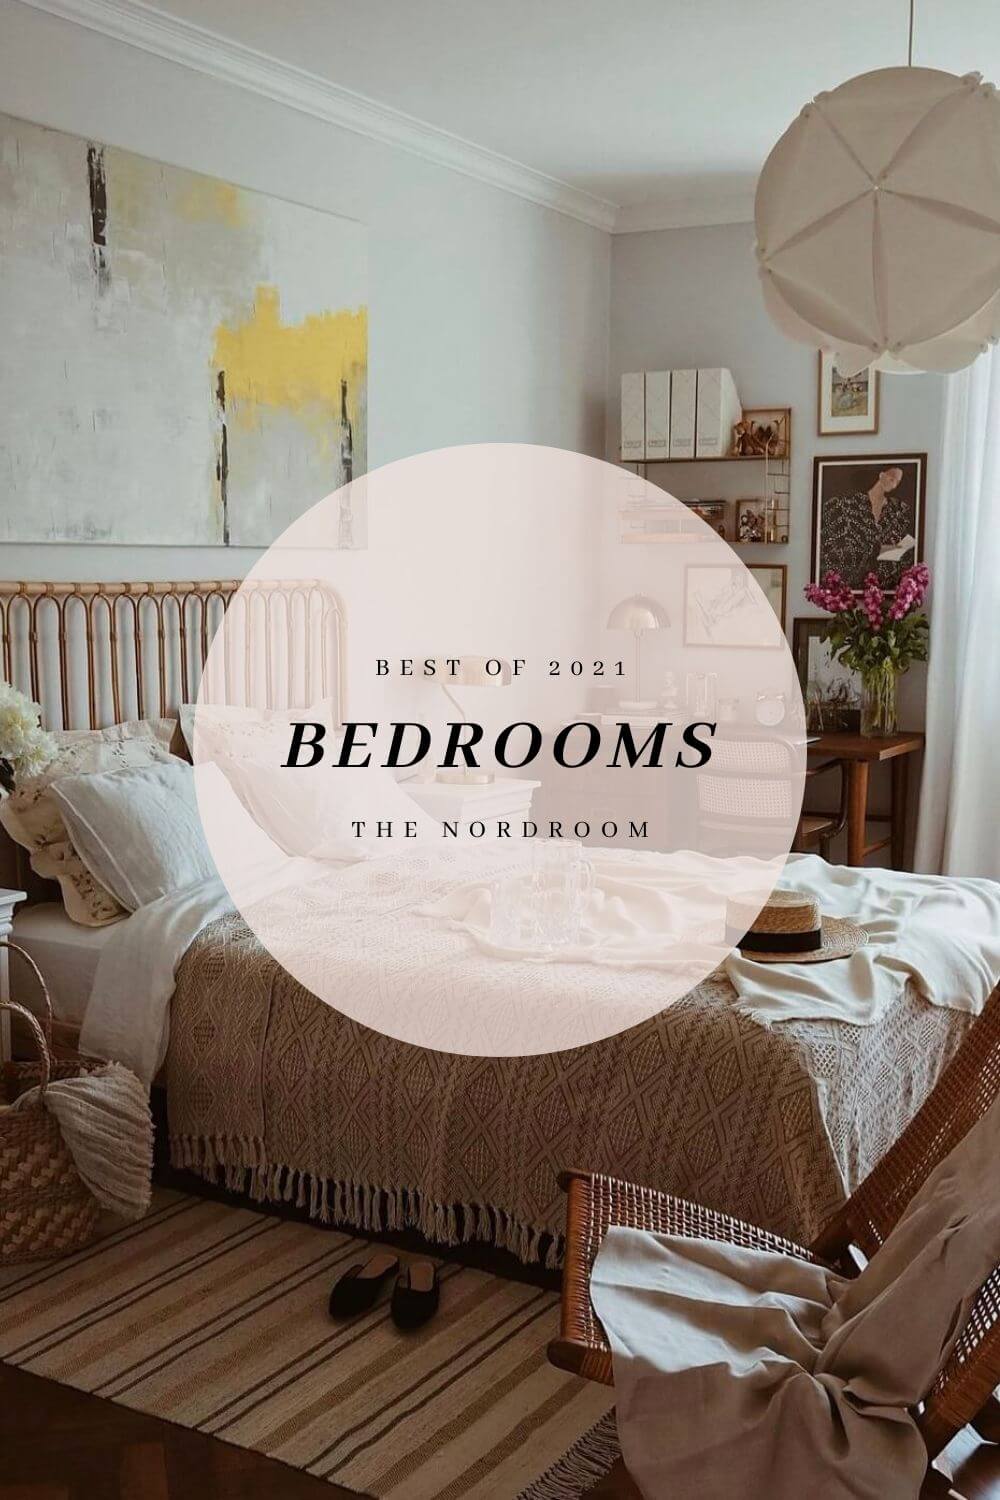 best of 2021 bedrooms nordroom Best of 2021: Bedrooms